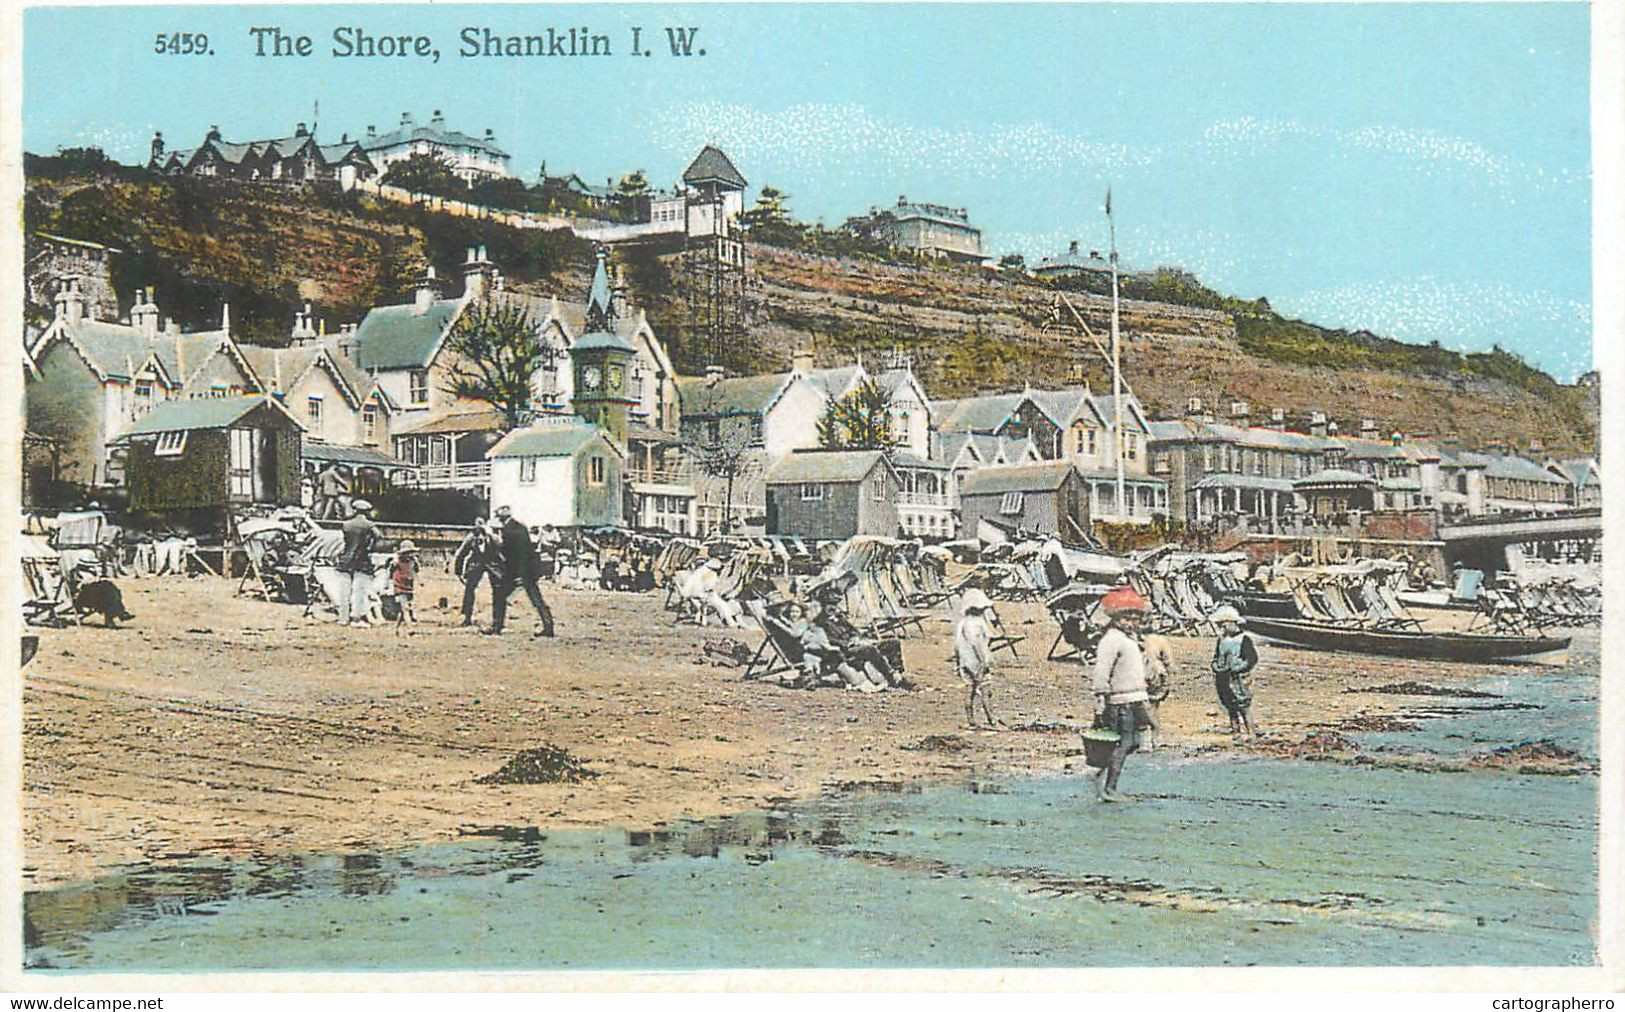 Shanklin Shore - Shanklin